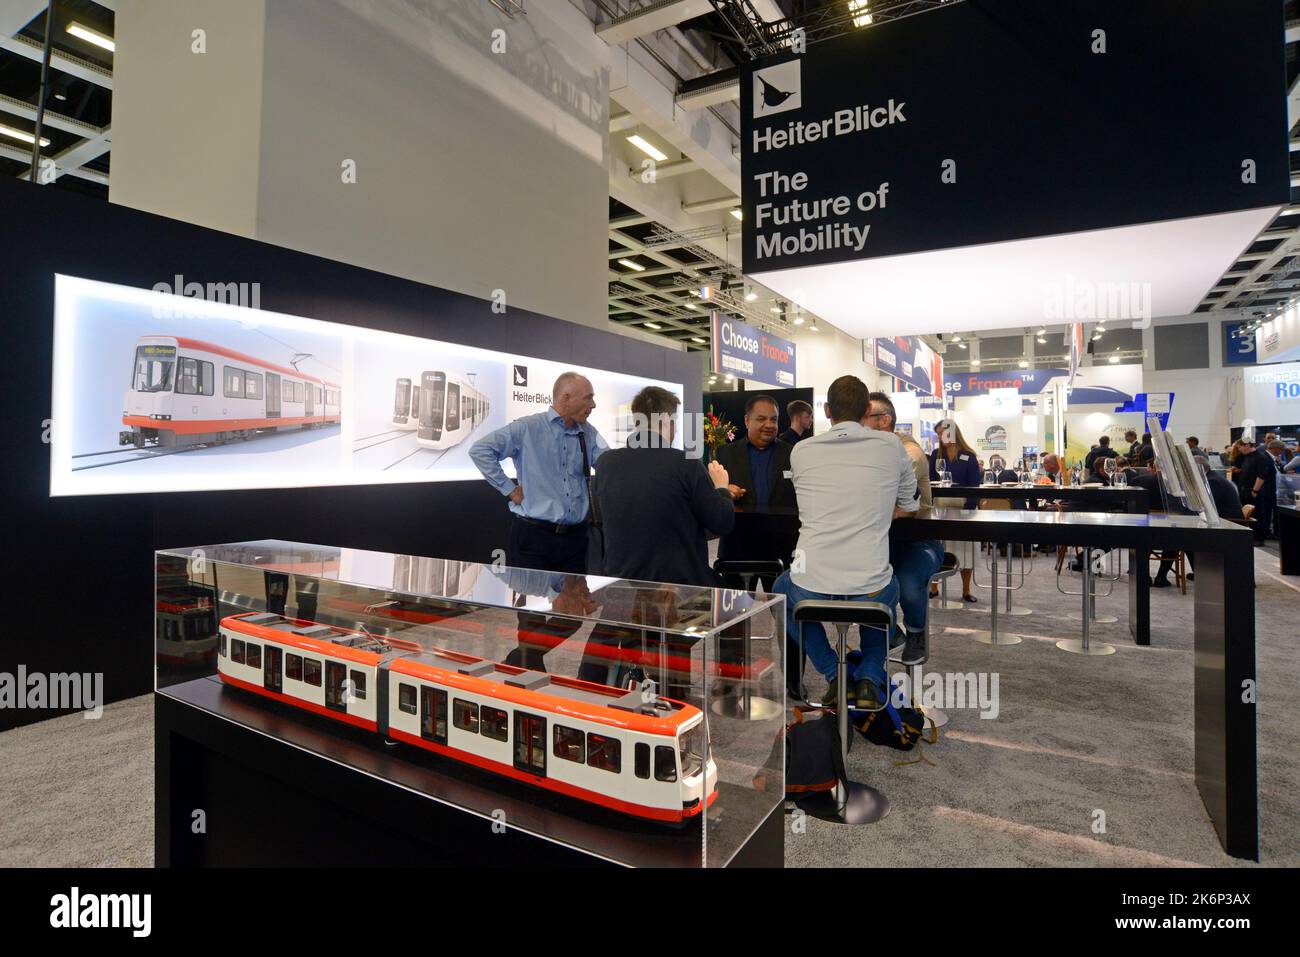 Le stand du fabricant de tramway HeiterBlick à Innotrans, l'exposition internationale des transports, Messe Berlin, septembre 2022 Banque D'Images